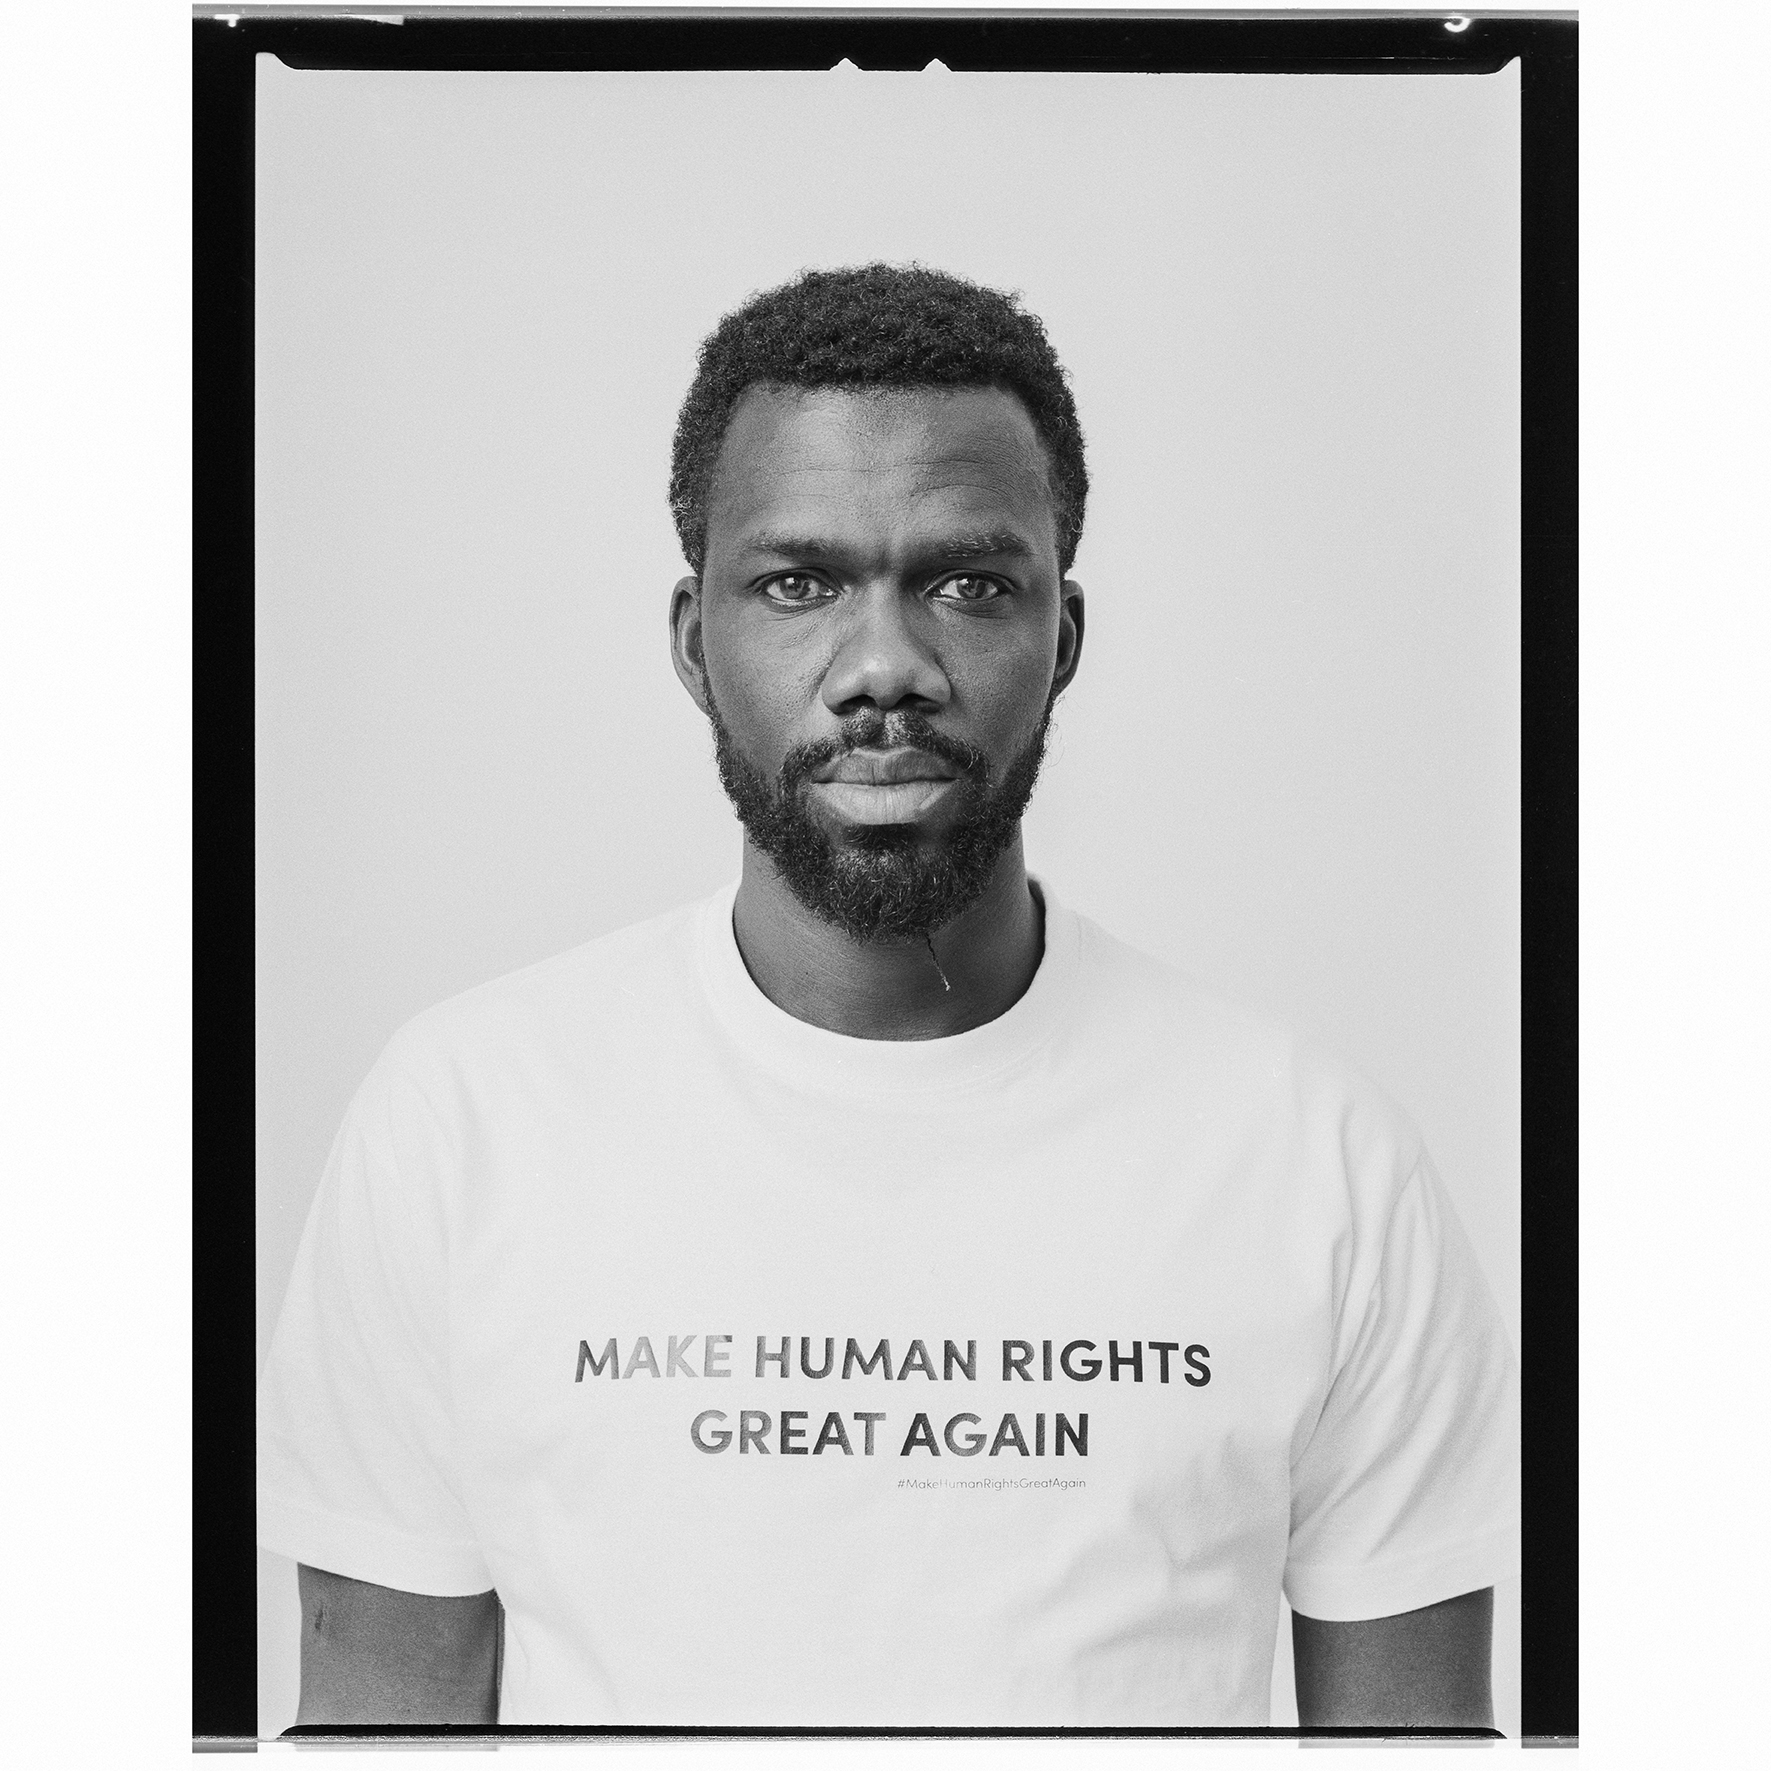 Oscar-arribas-photography-fotografo-portrait-retrato-editorial-derechos-humanos-human-rights-hasselblad-h1-ilford-02.jpg